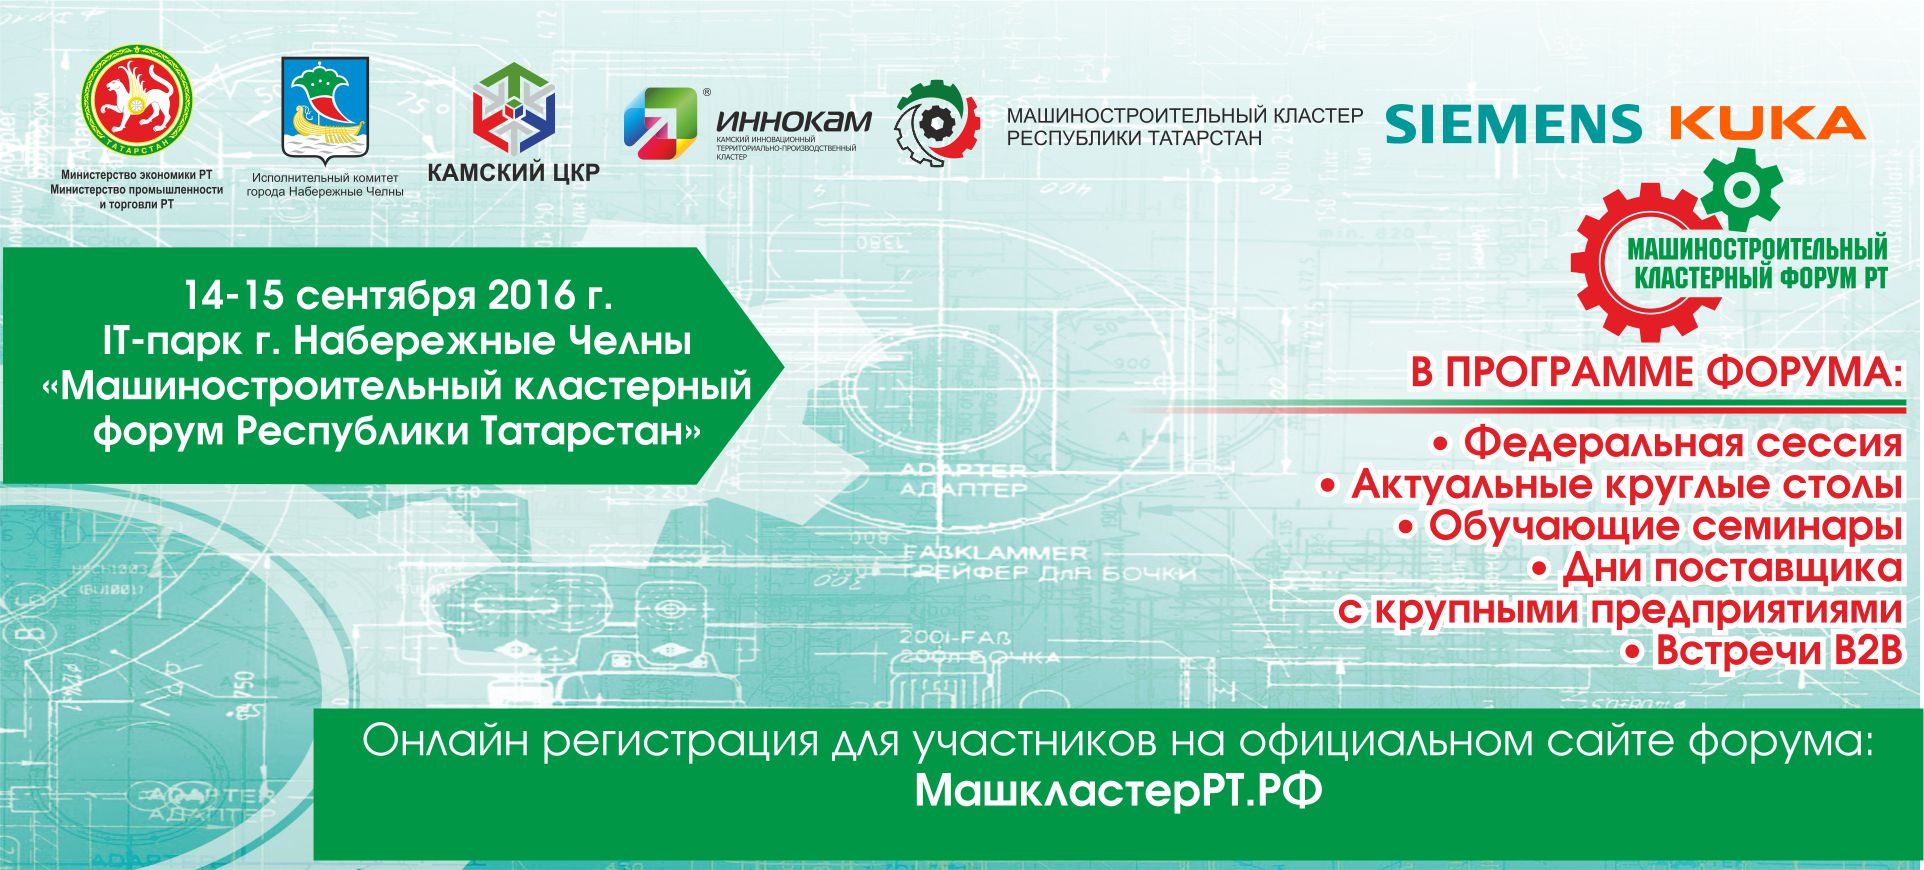 15-16 сентября в Набережных Челнах состоится Машиностроительный Кластерный Форум Республики Татарстан "Цифровое производство и будущее автомобильной промышленности"